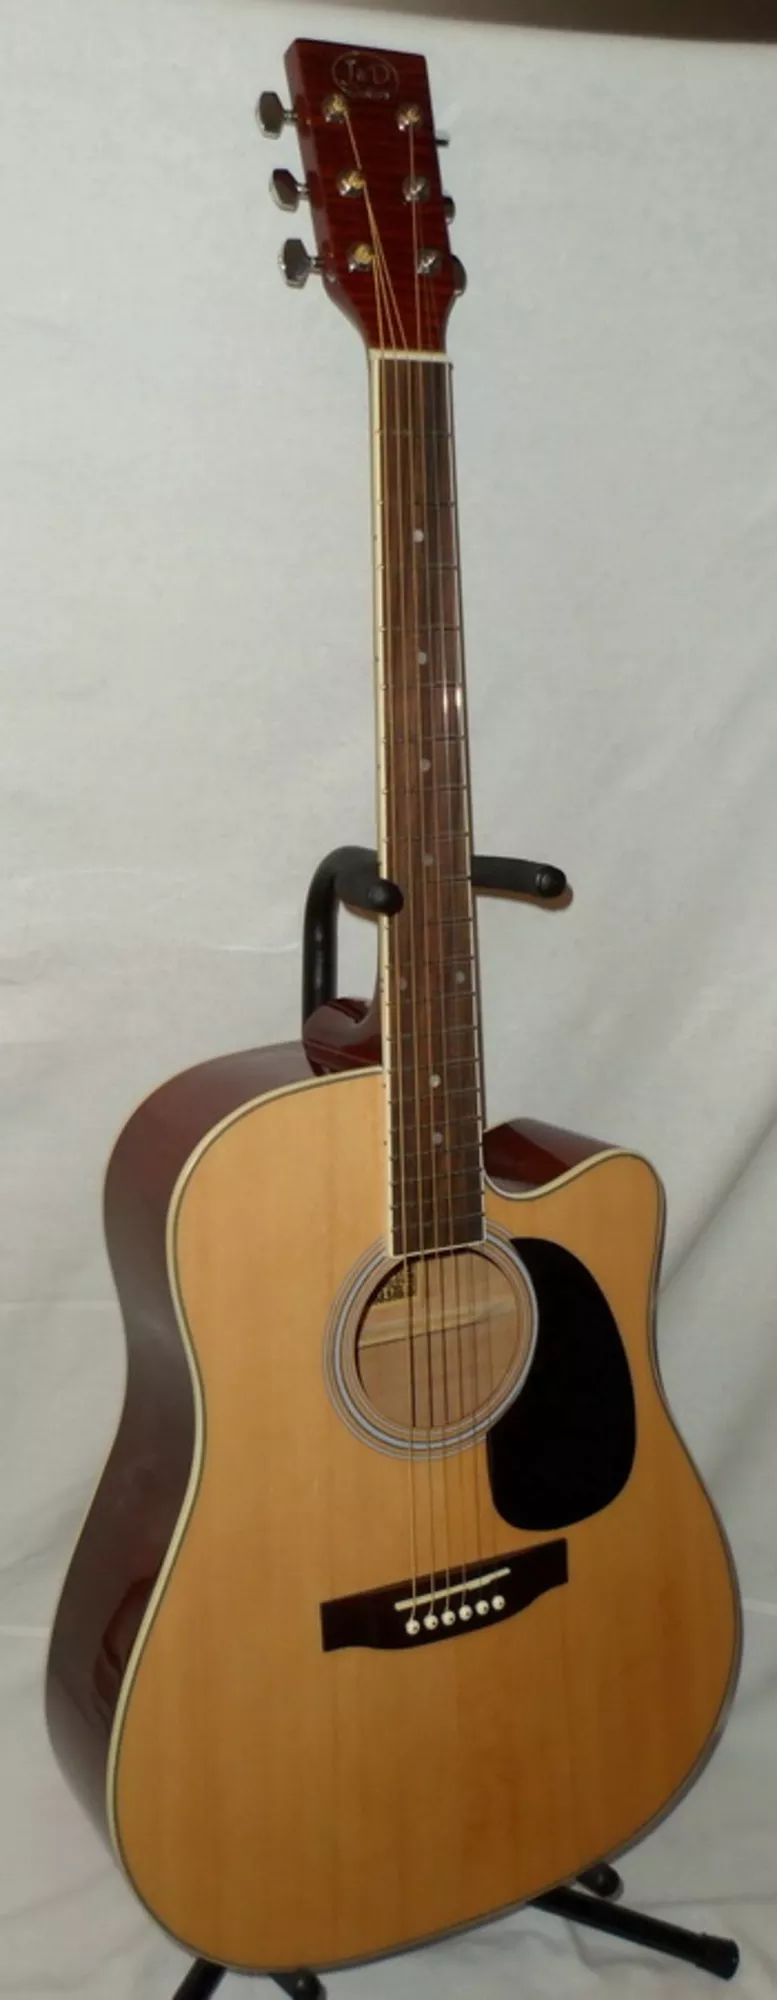 Продам акустическую гитару J&D (AG-8c), новая,  доставка 3